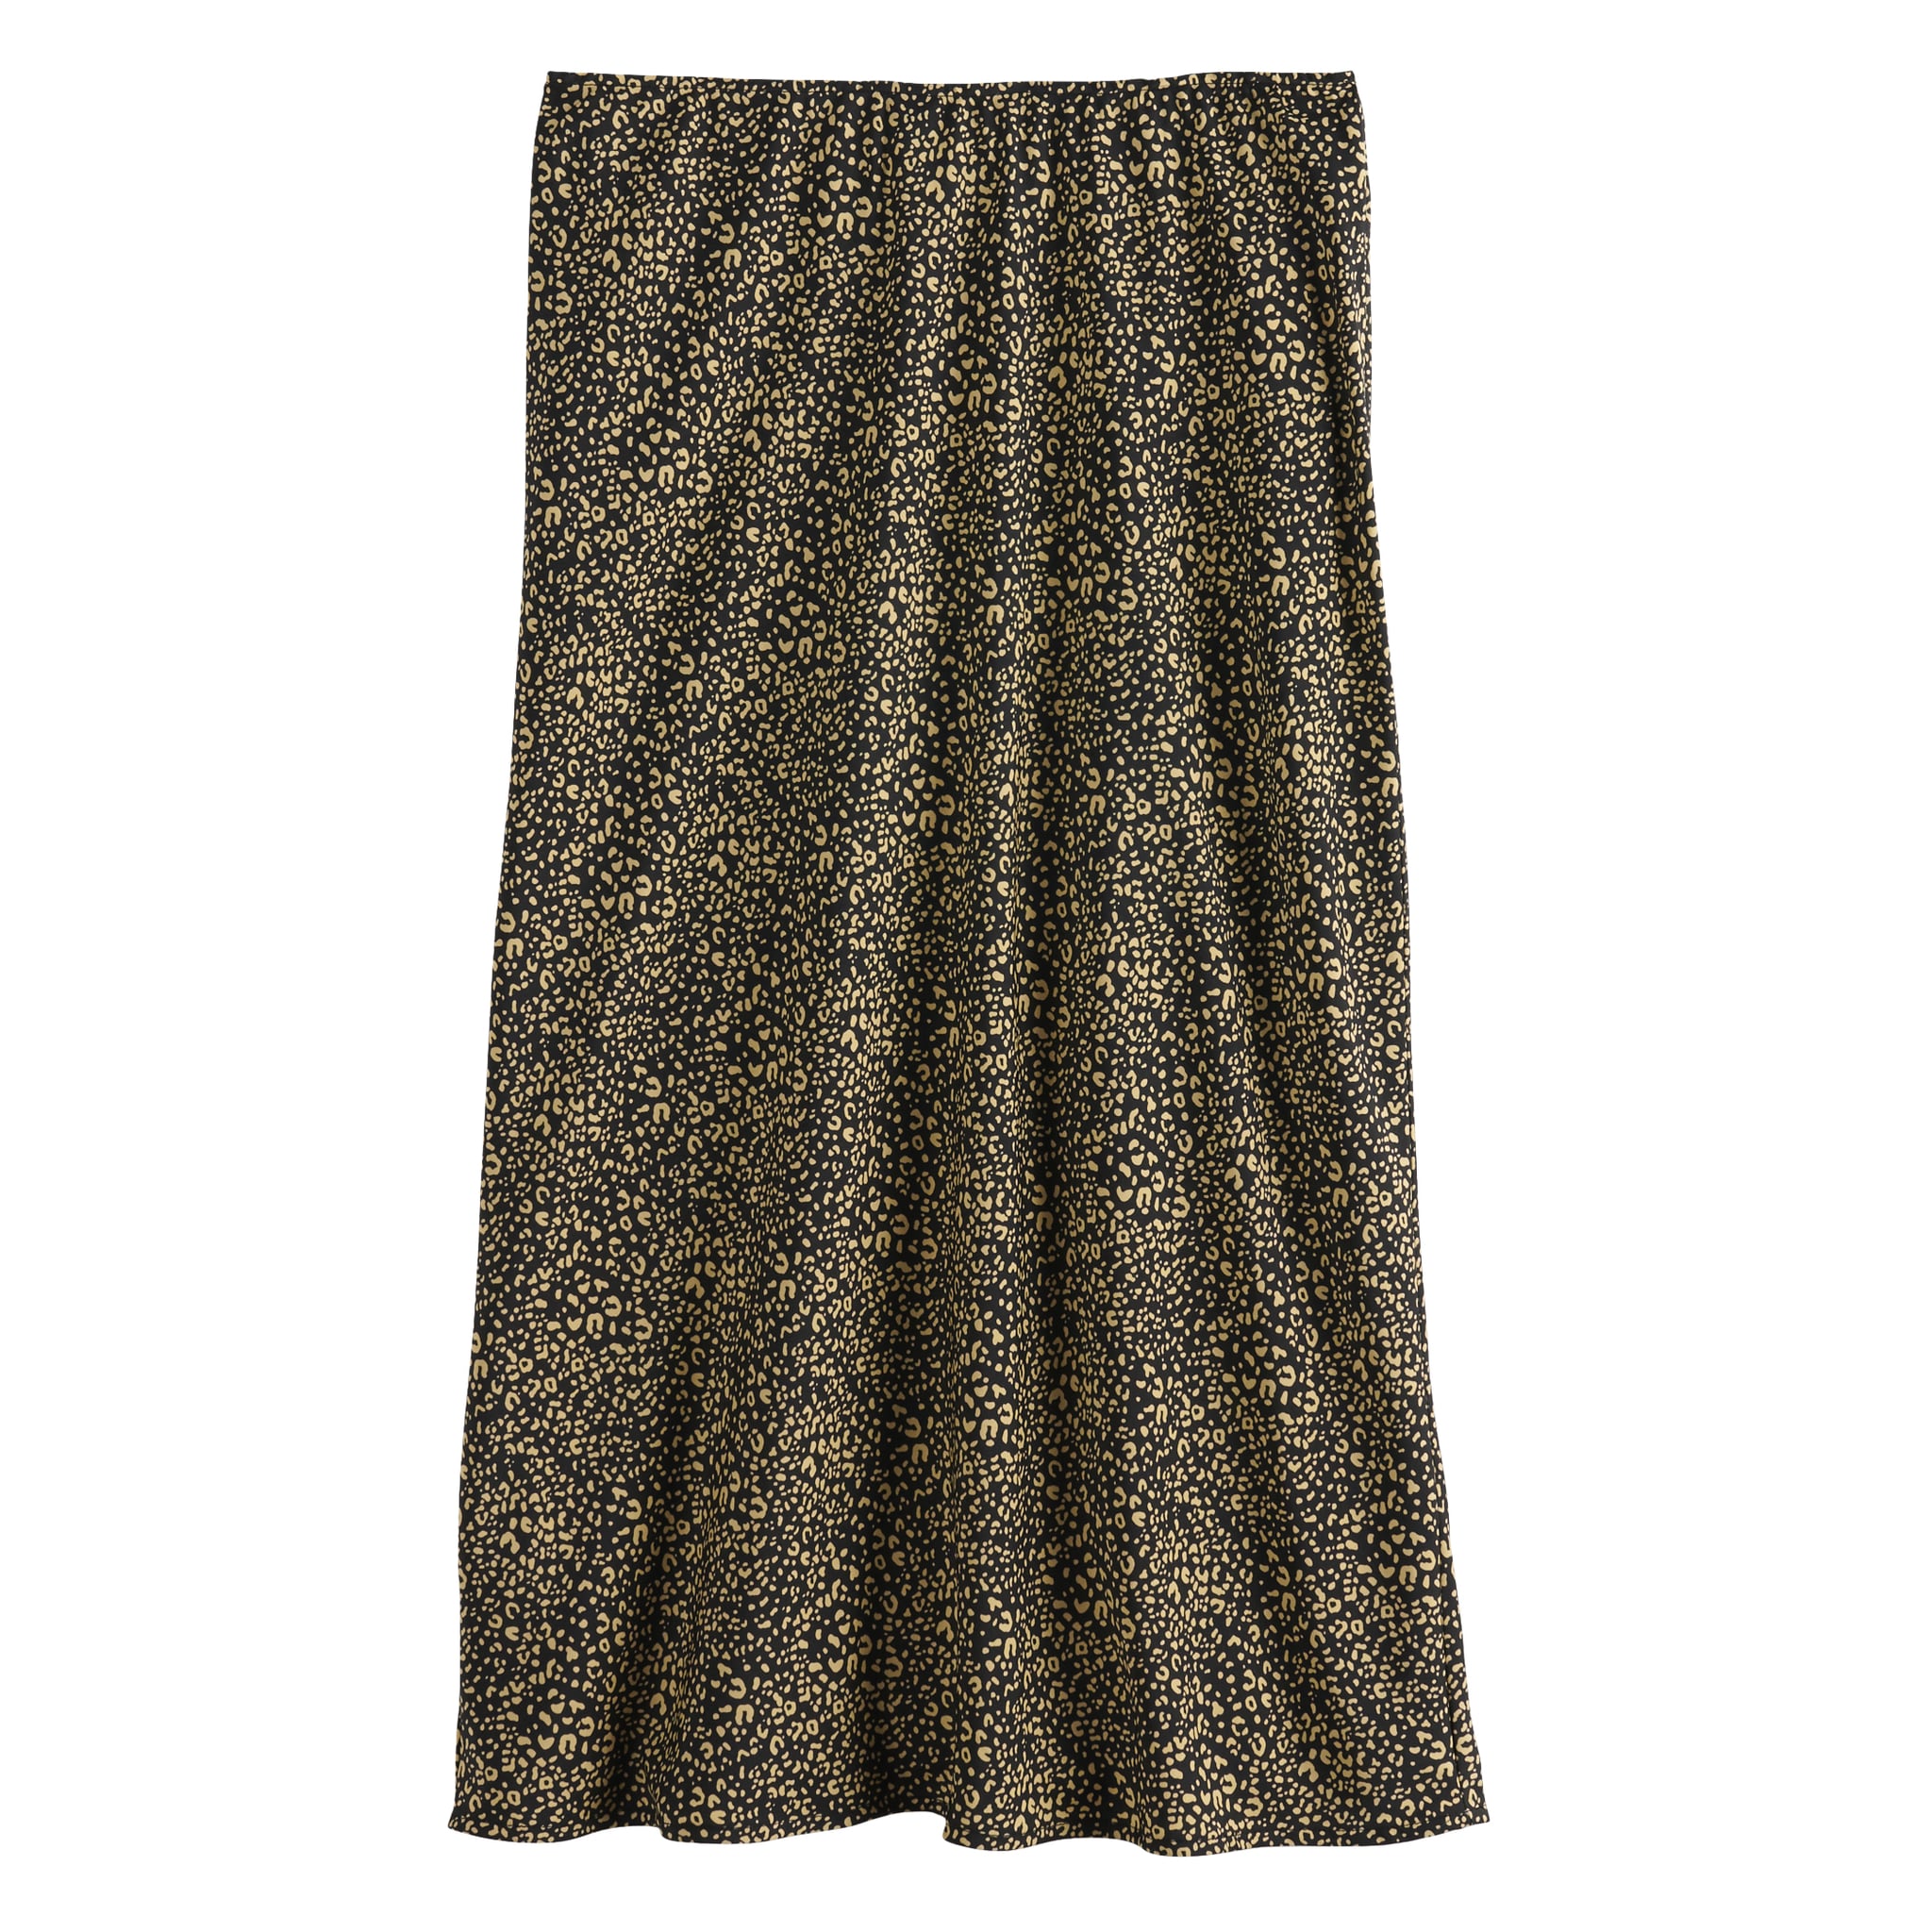 Cute Cheap Slip Skirts For Fall 2019